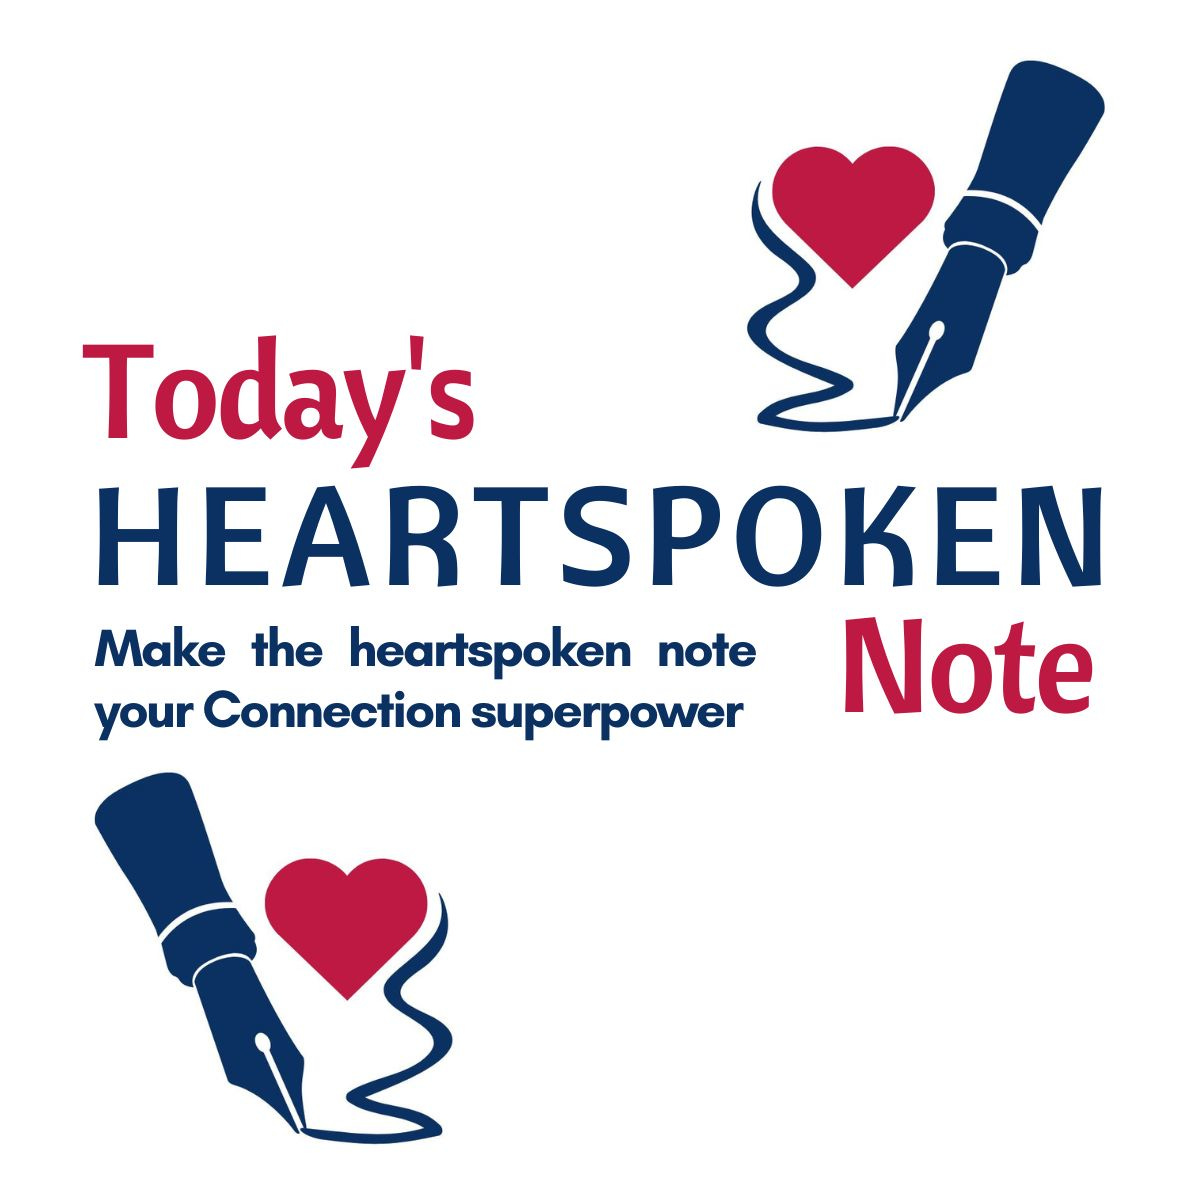 Today's HEARTSPOKEN Note